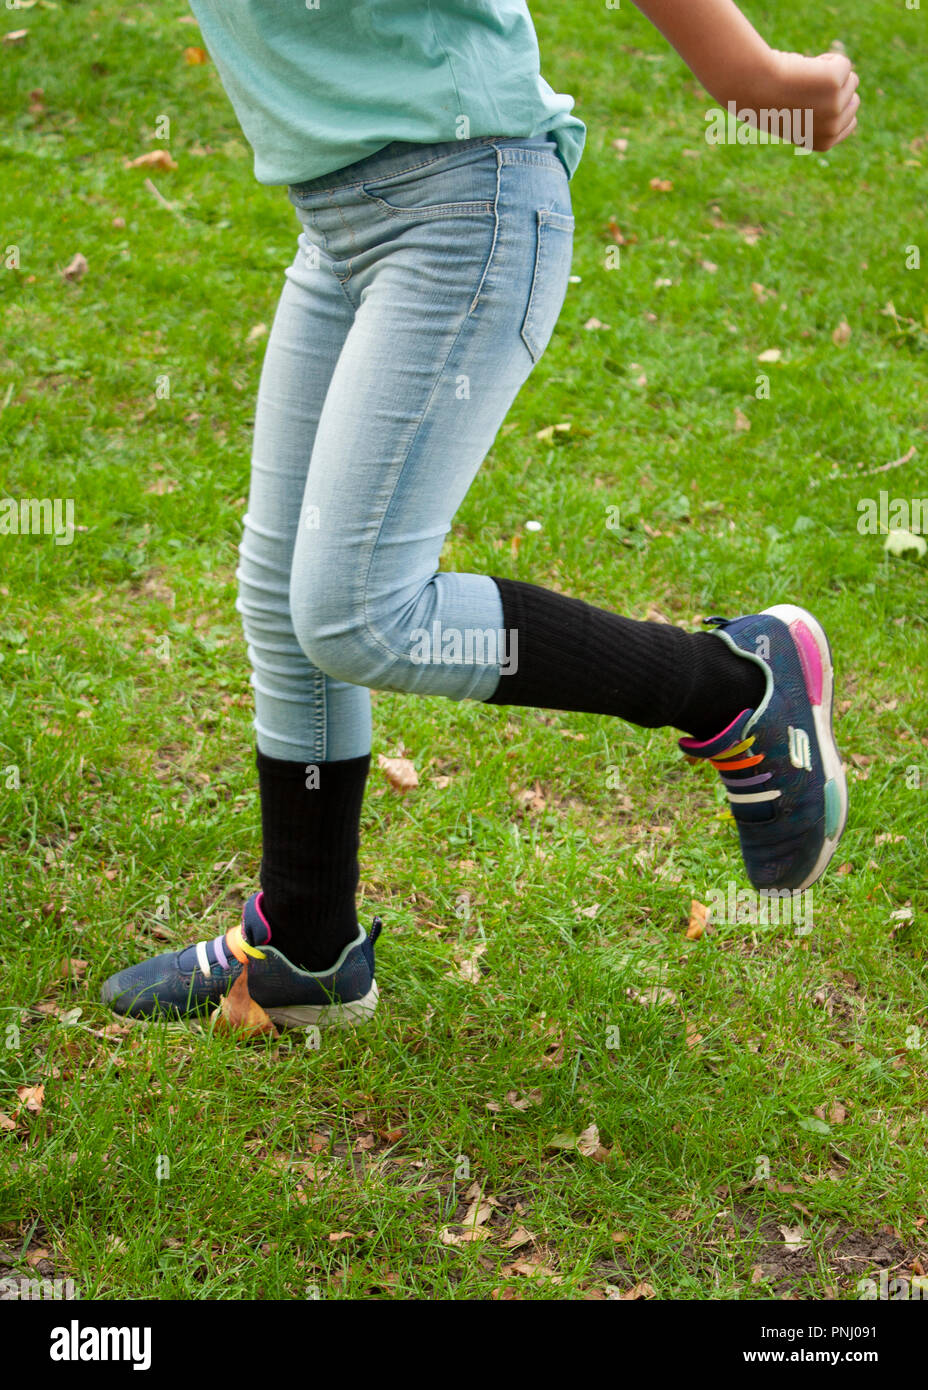 Mädchen mit Socken über Hosen für zeckenbiss Prävention, Kinder von Lyme Krankheiten und andere tick Infektionen zu schützen. Stockfoto